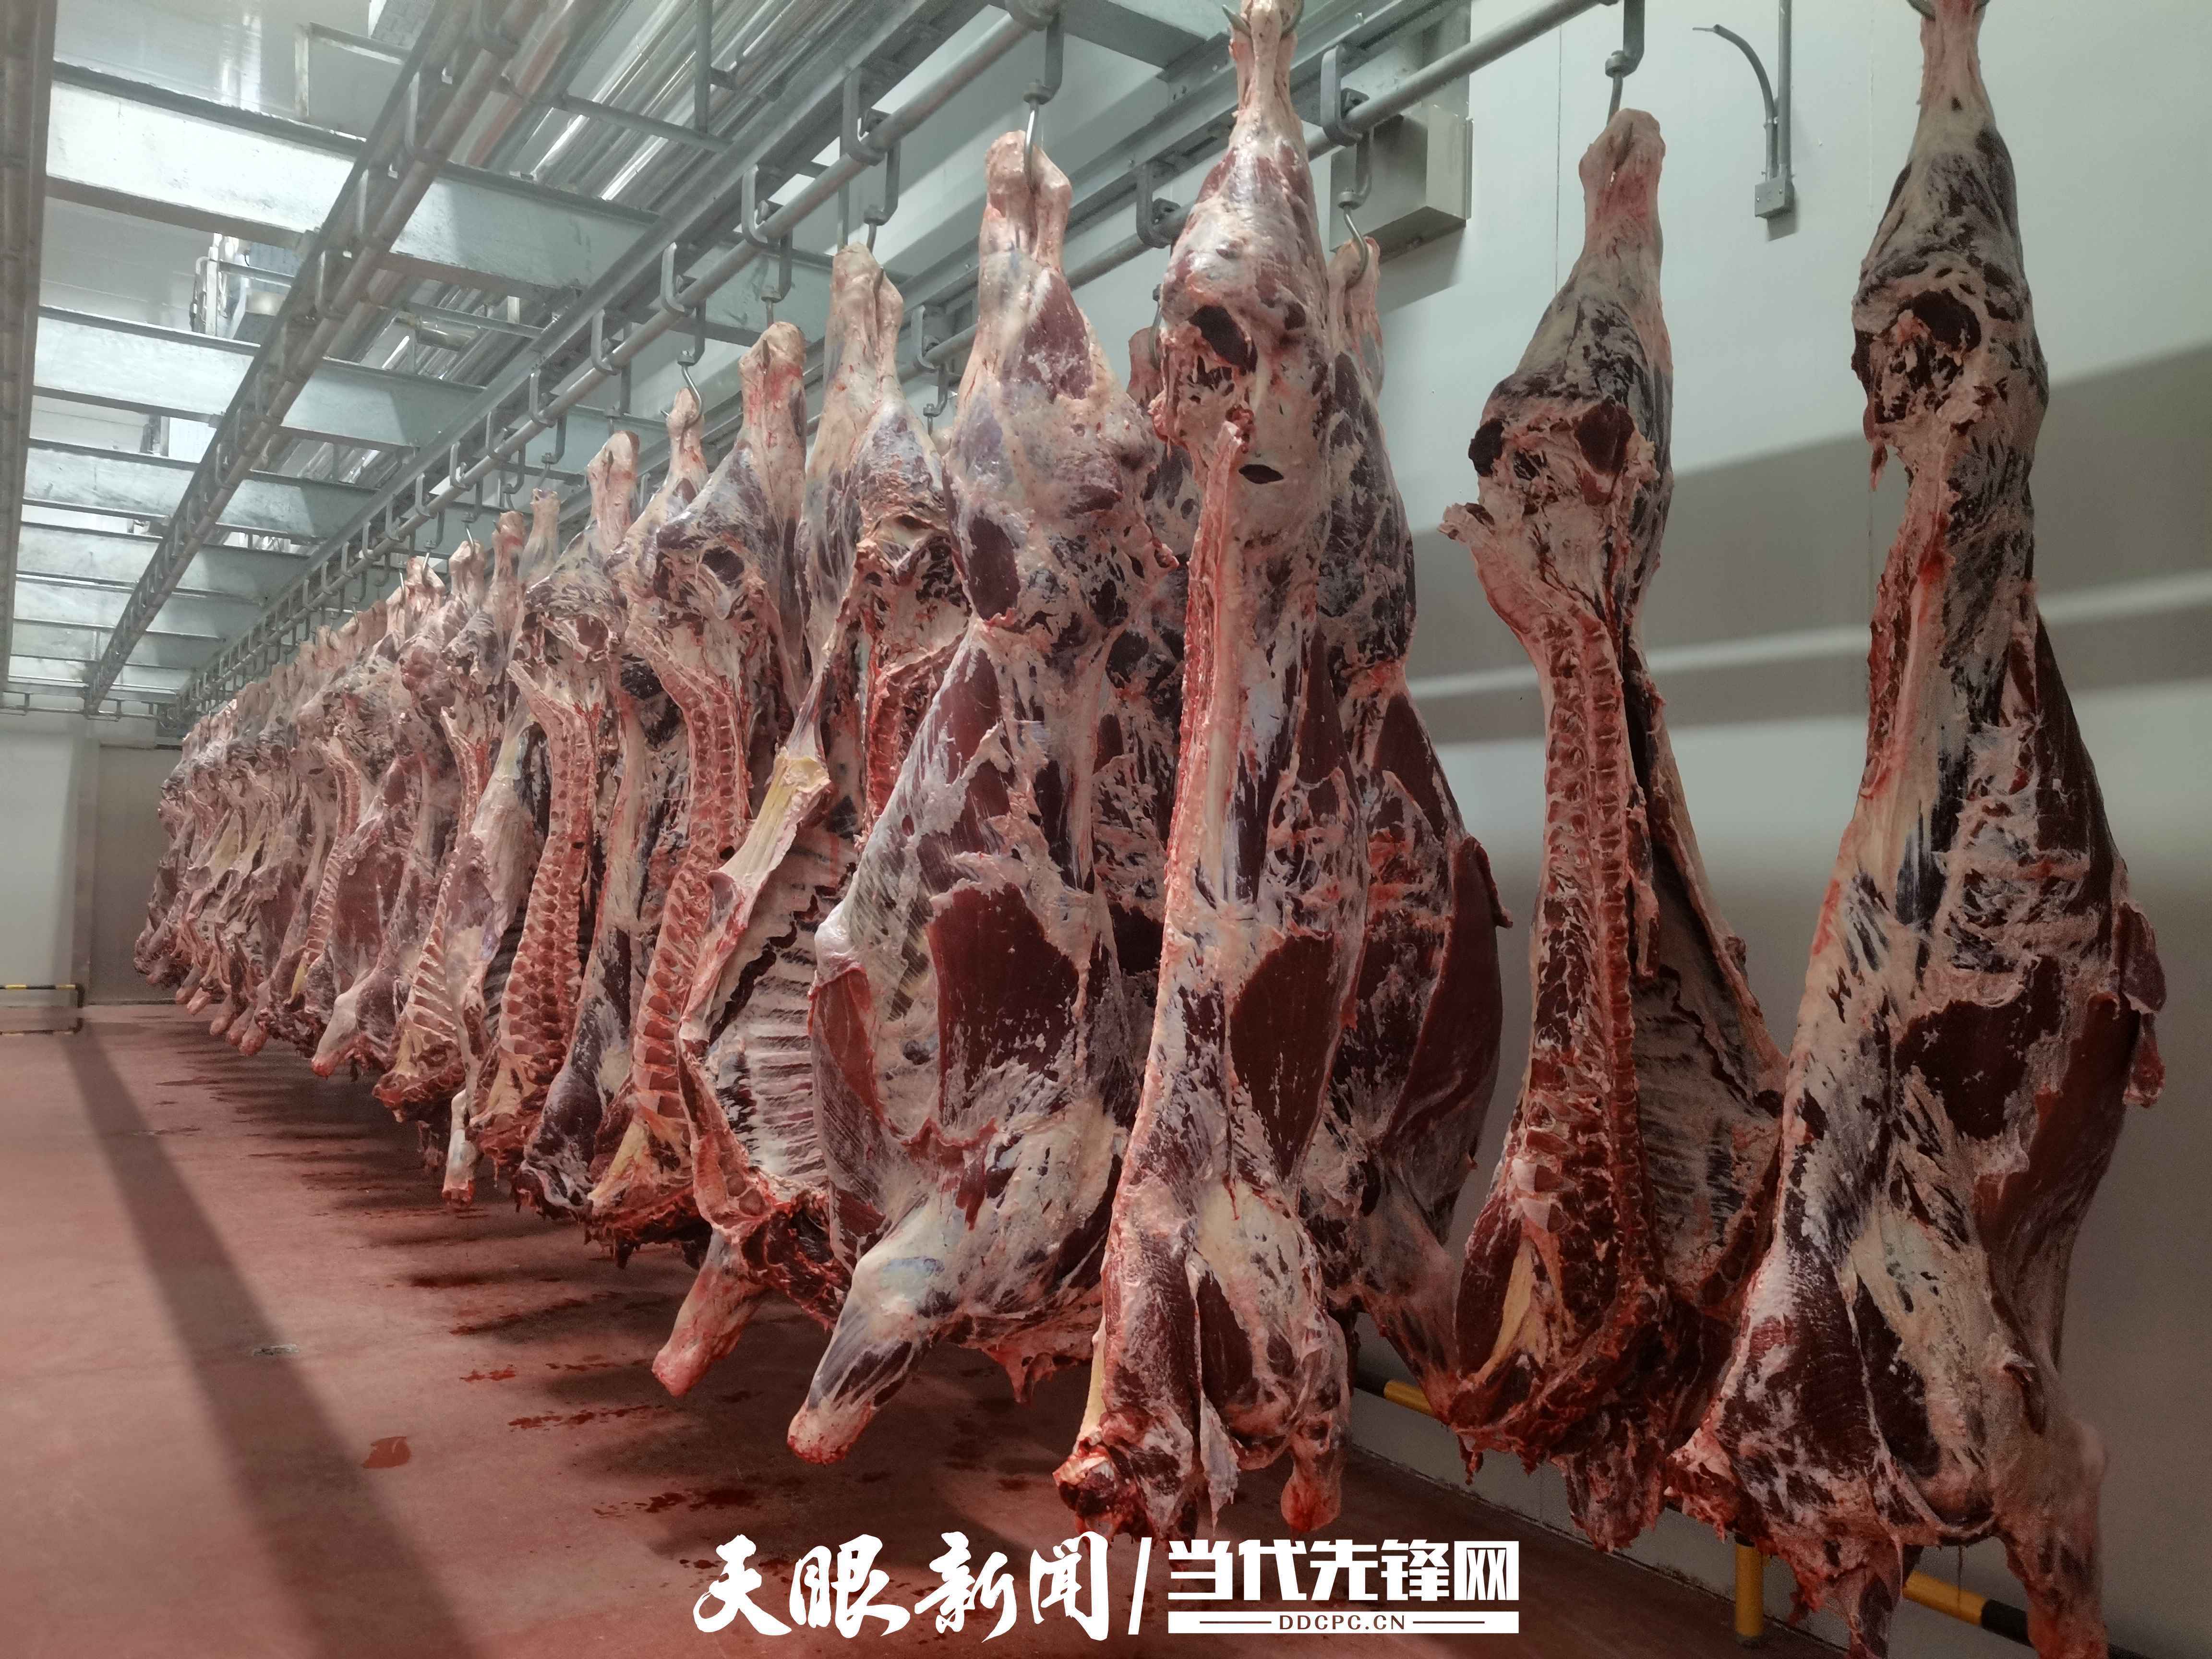 贵州黄牛产业集团黔西公司首批102头安格斯牛肉即将运往贵阳